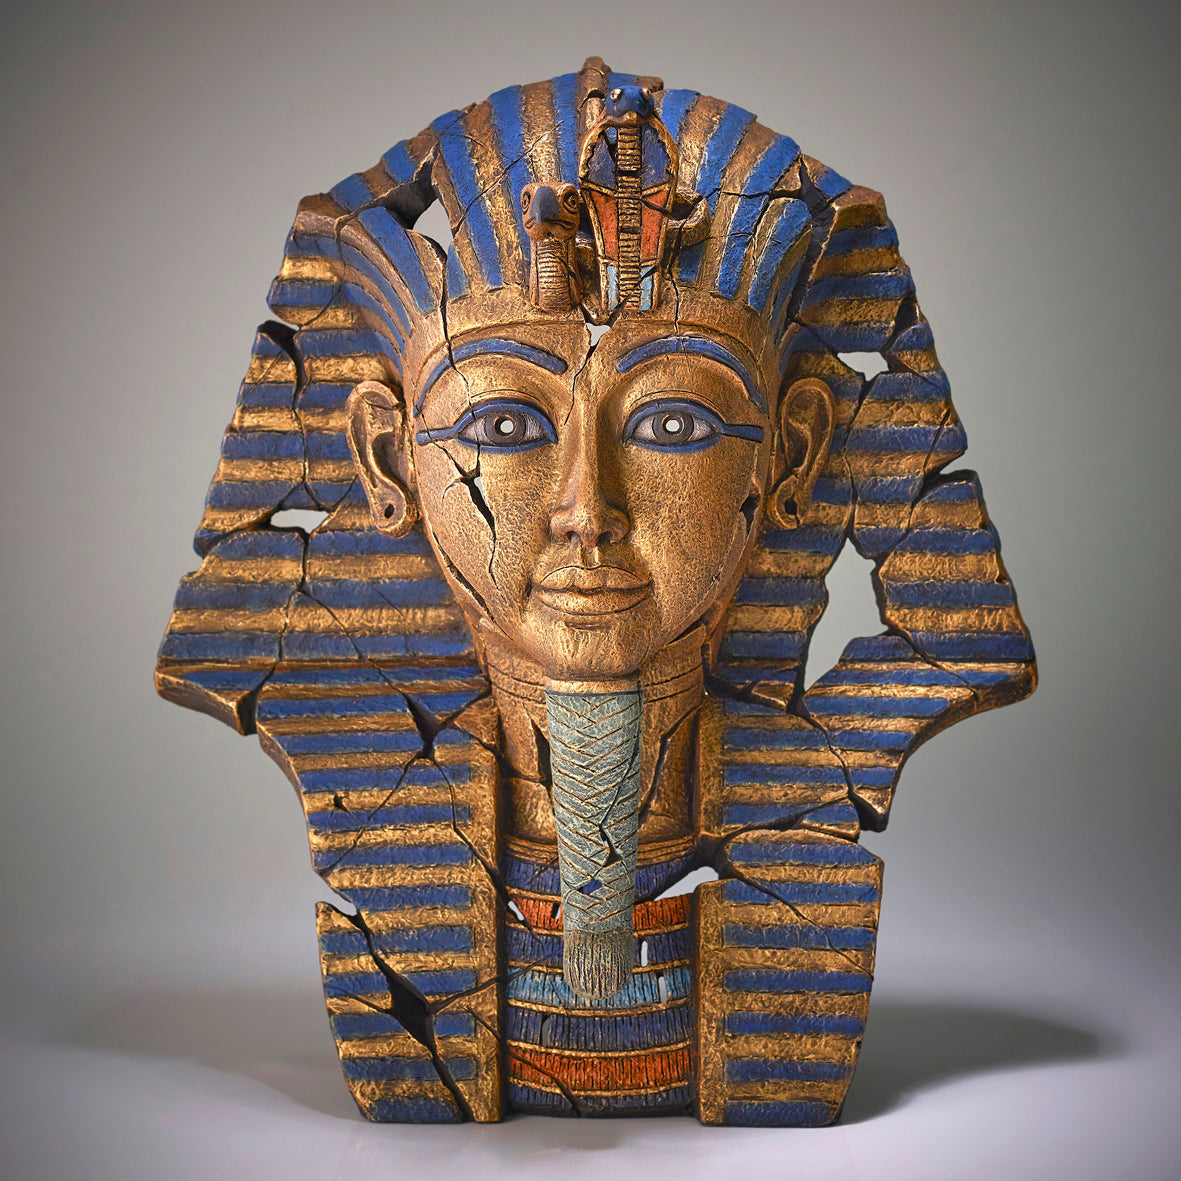 Edge Sculpture Tutankhamun by Matt Buckley